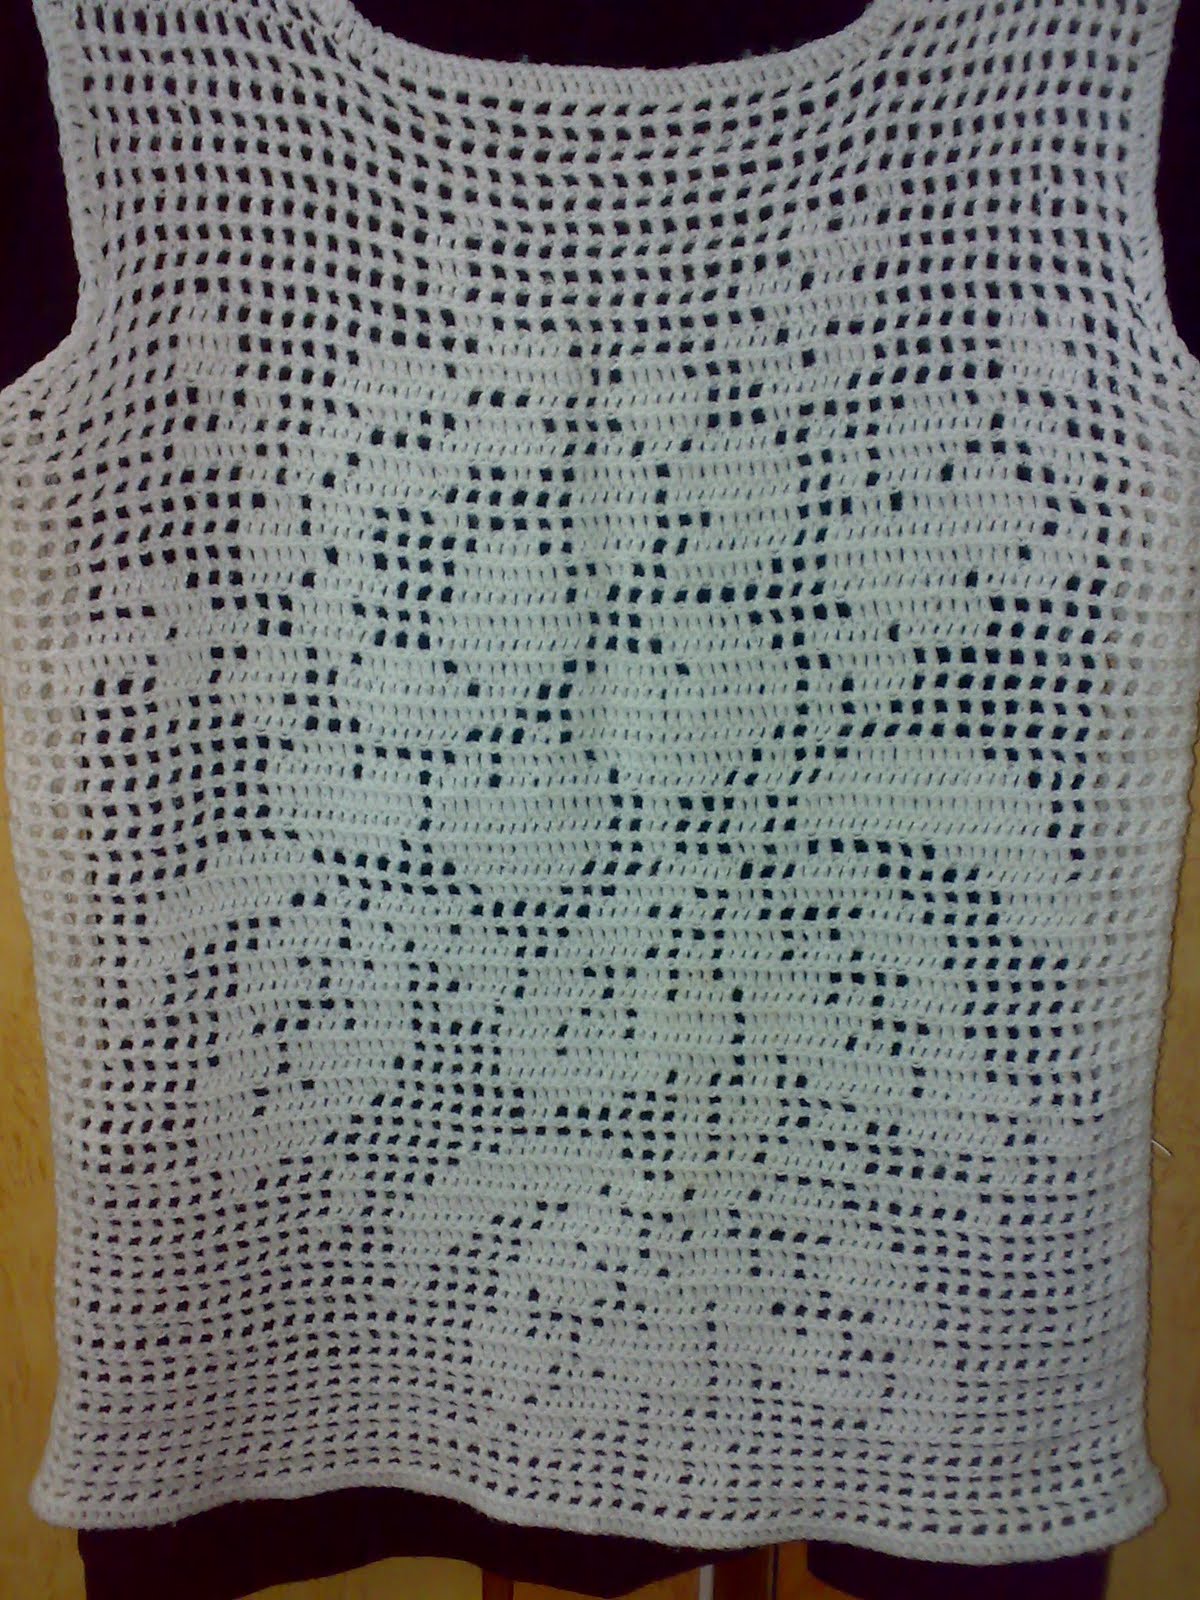 Beginning Filet Crochet Patterns – Crochet Patterns